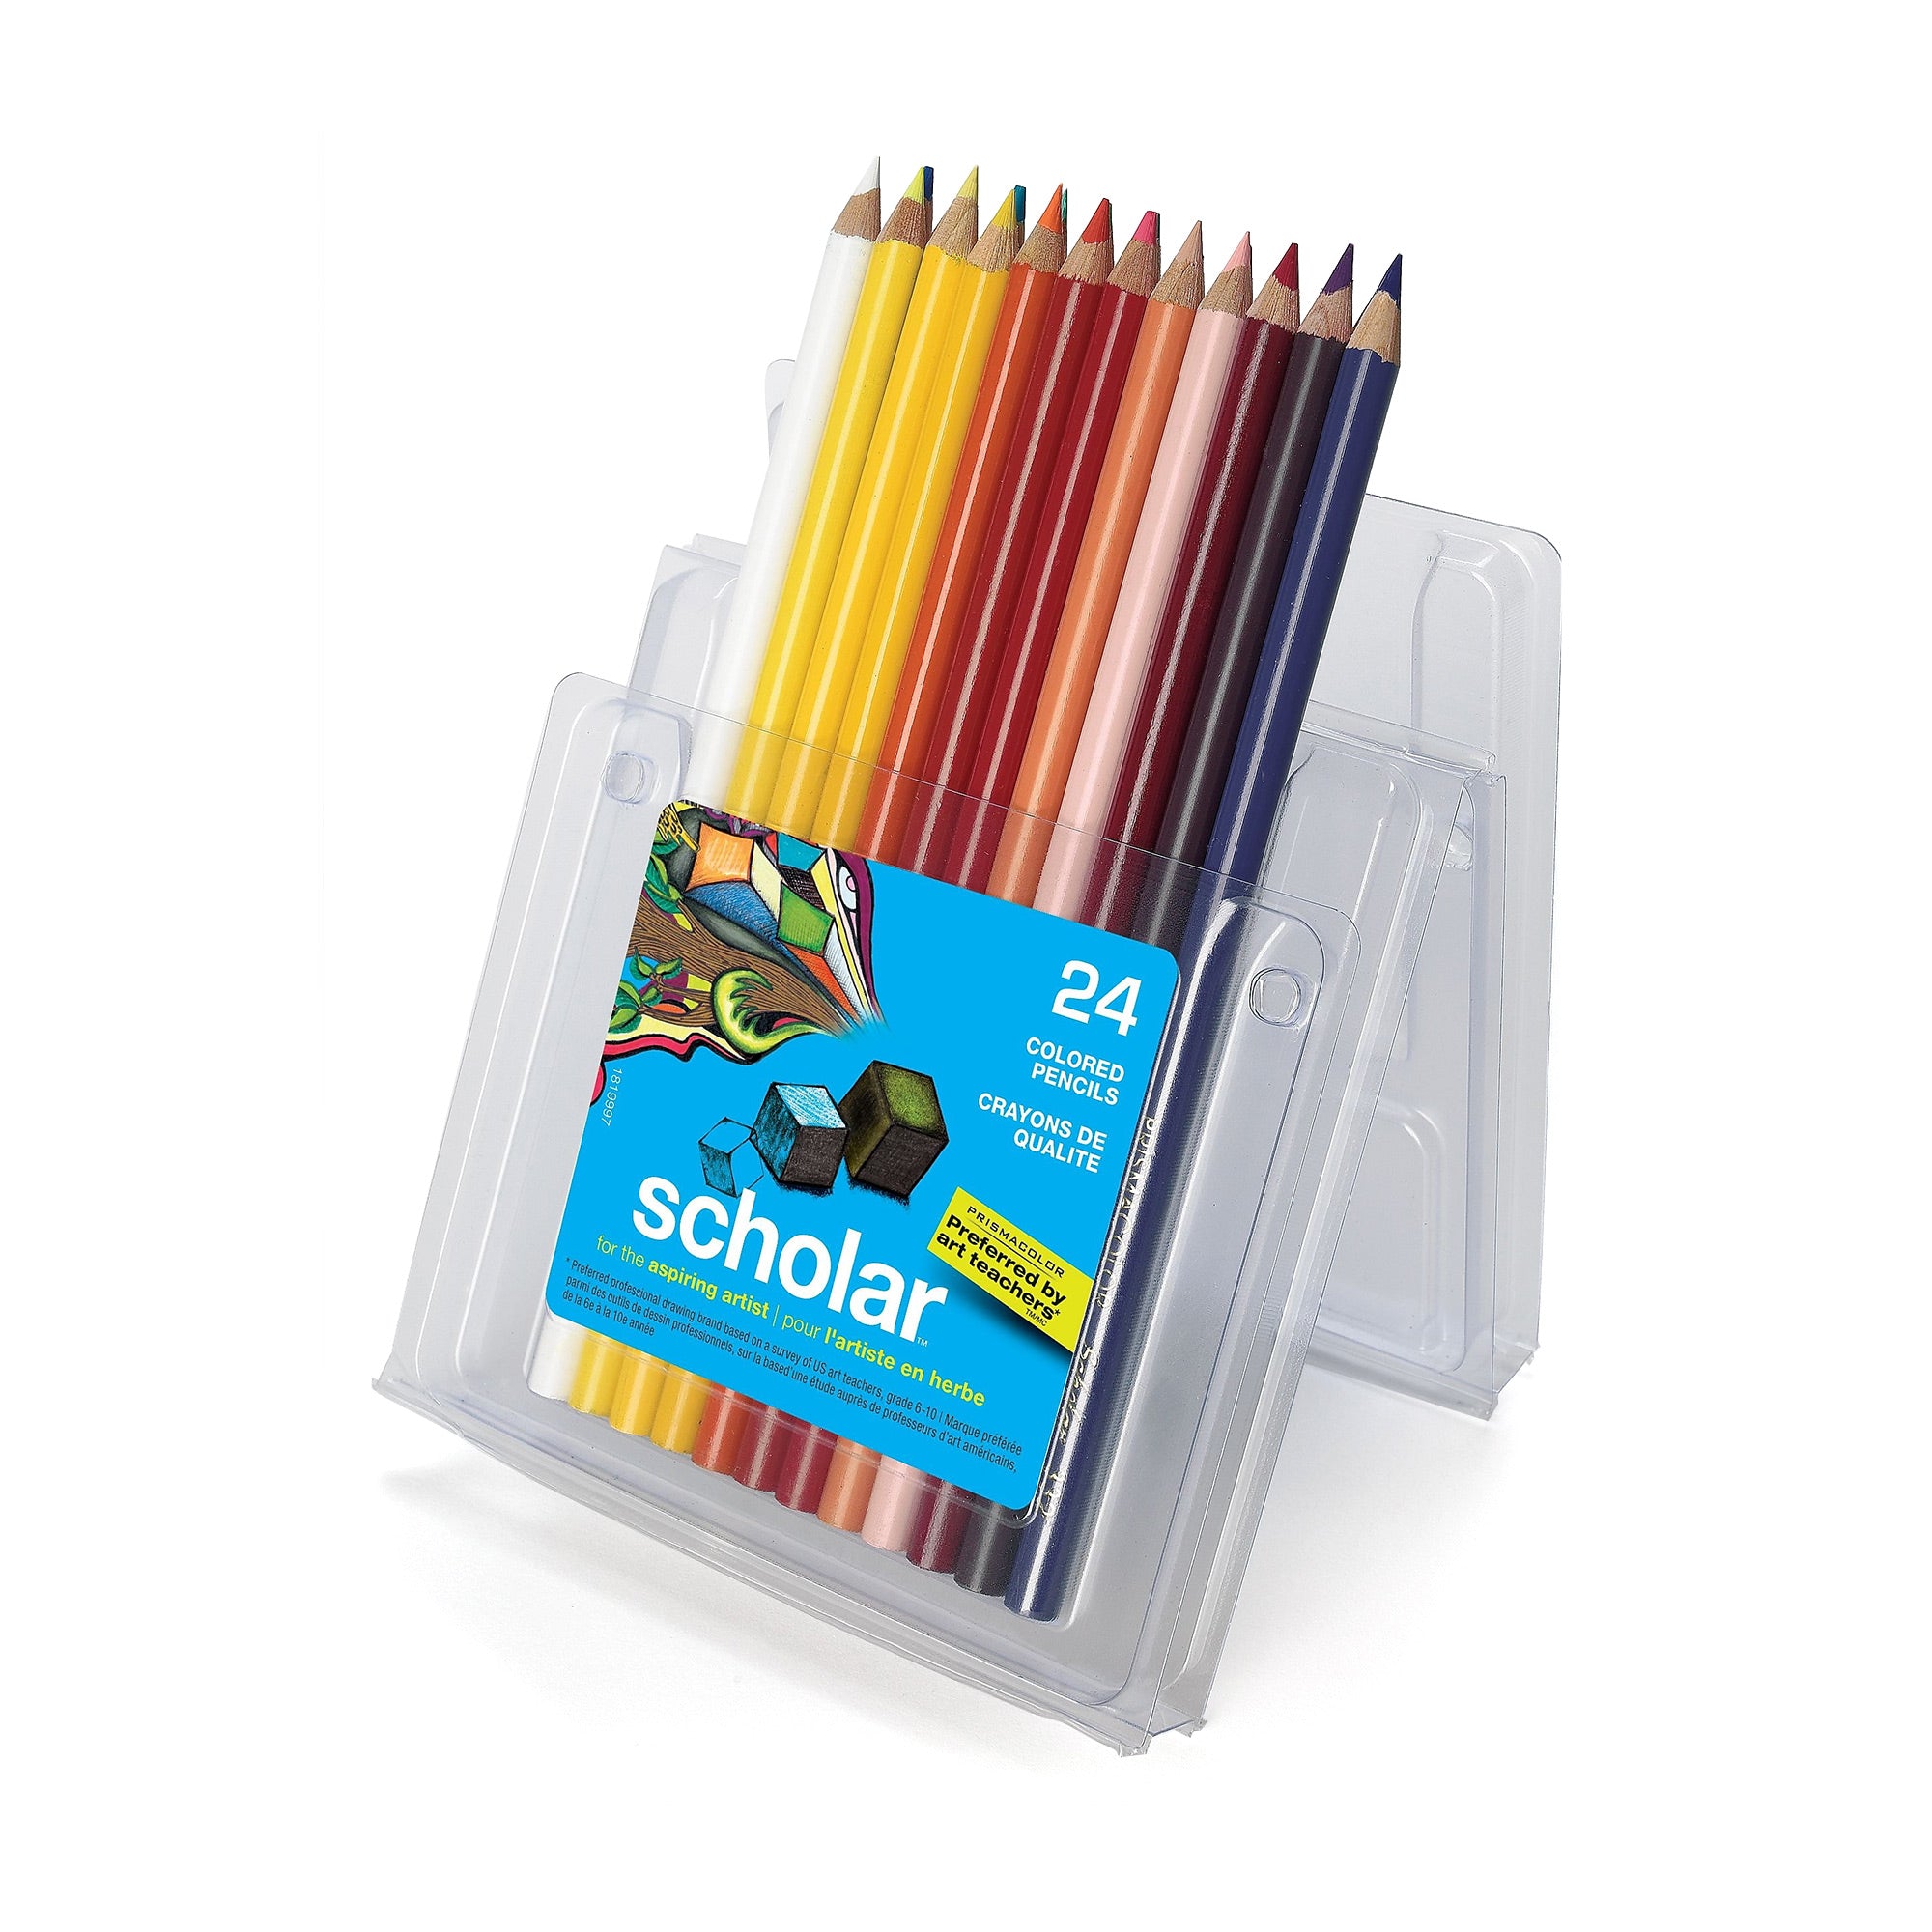 Crayons de dessin Kit d’art, stylos à dessin Art professionnel graphite  Peinture au fusain Outils de dessin pour artistes Étudiants Enseignants